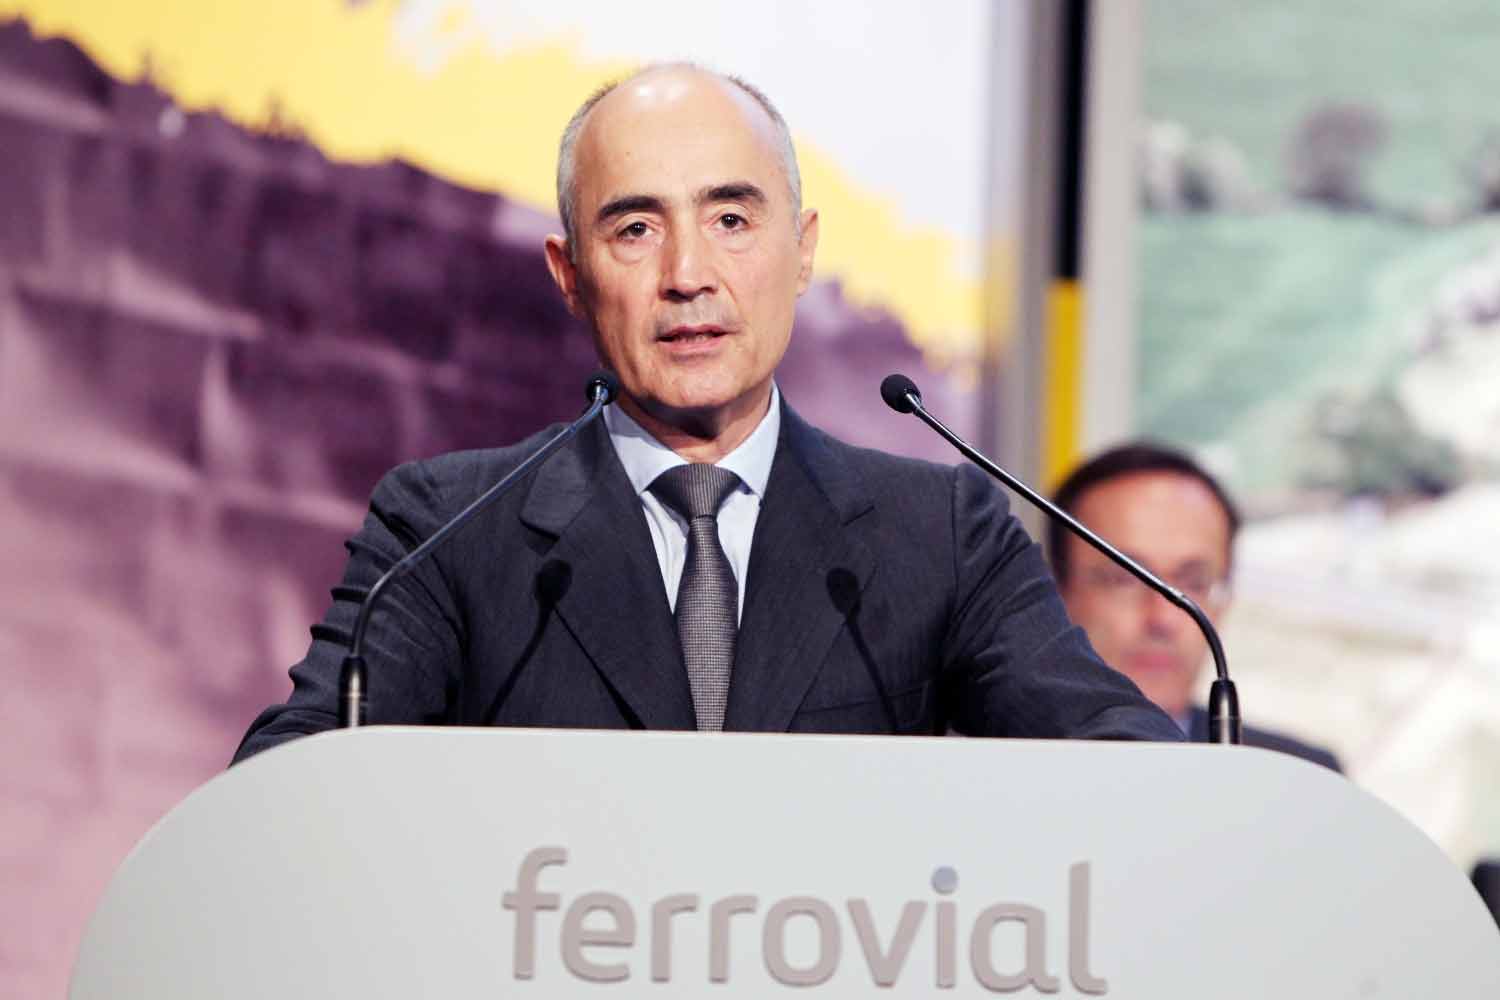 Ferrovial advances with its calendar despite the suspicion of the Government